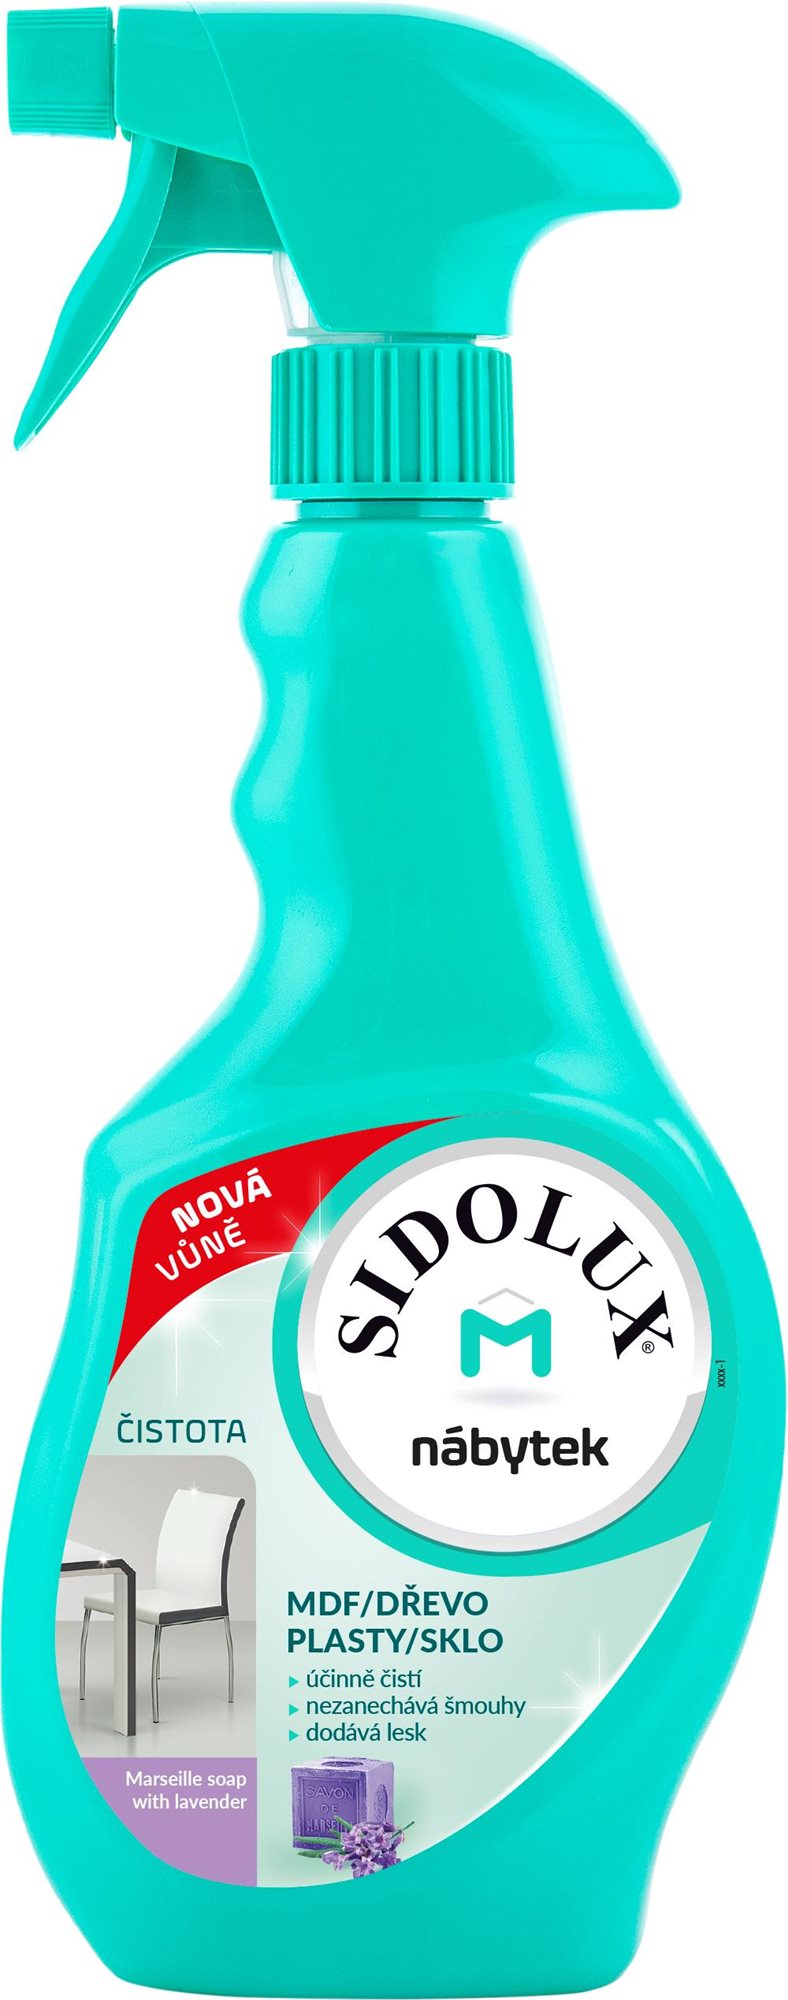 Bútortisztító SIDOLUX M portalanító Marseill szappan levendulával 400 ml